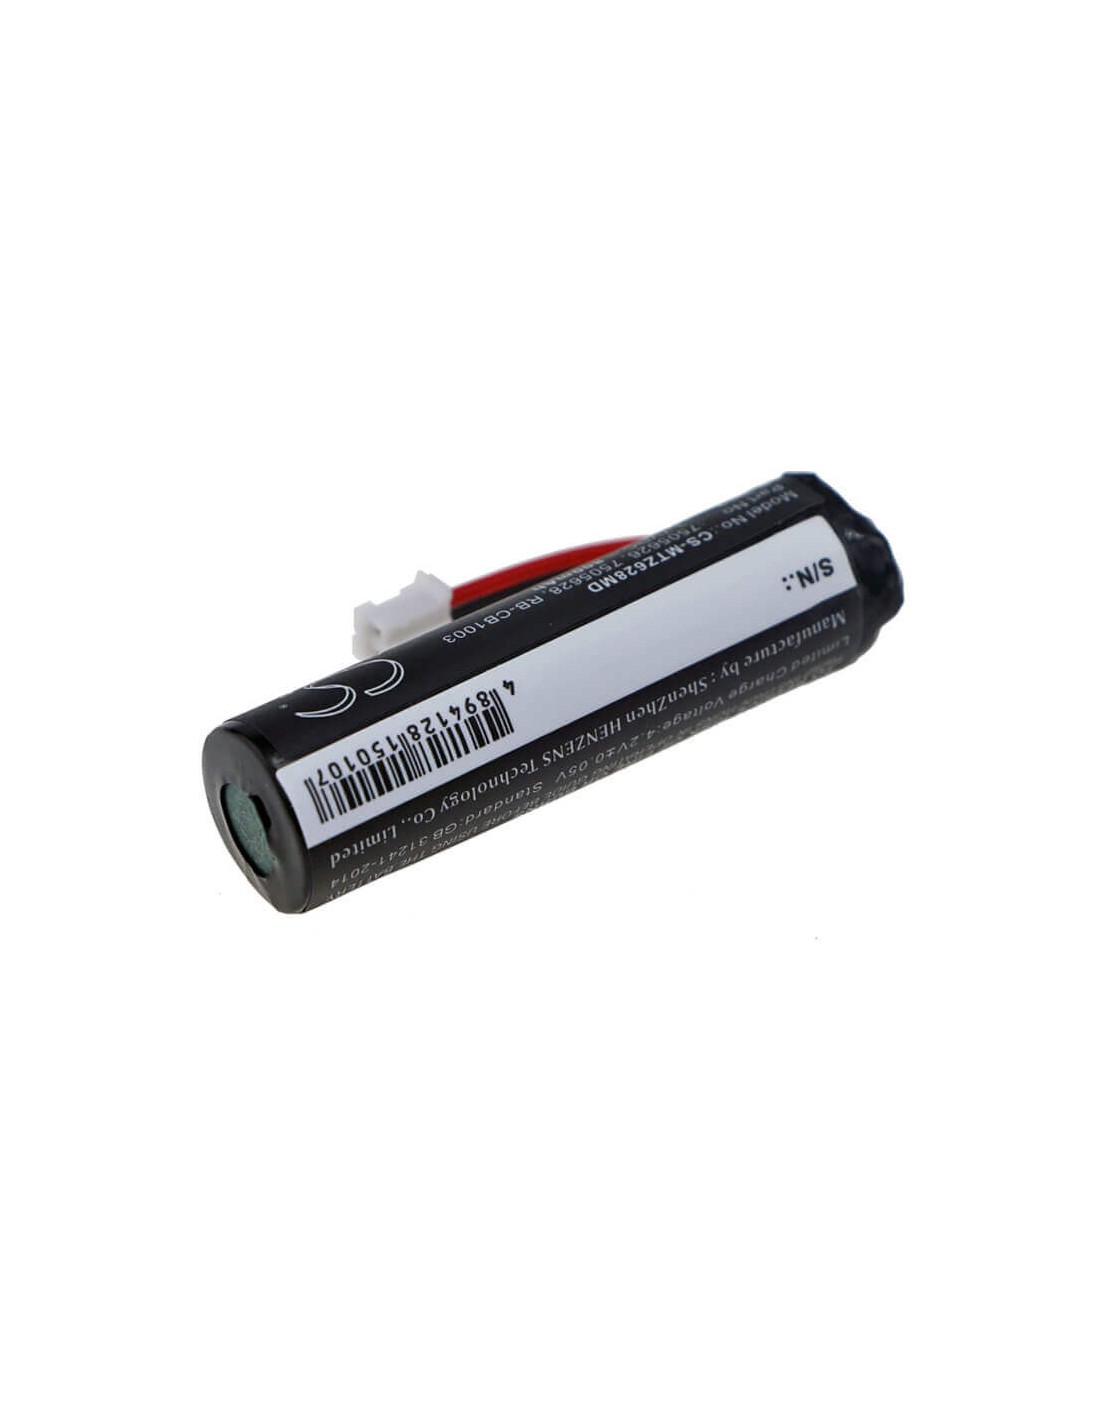 Battery for Morita, Brasseler Endosync, Pencure Led, Tr-cm 3.7V, 800mAh - 2.96Wh